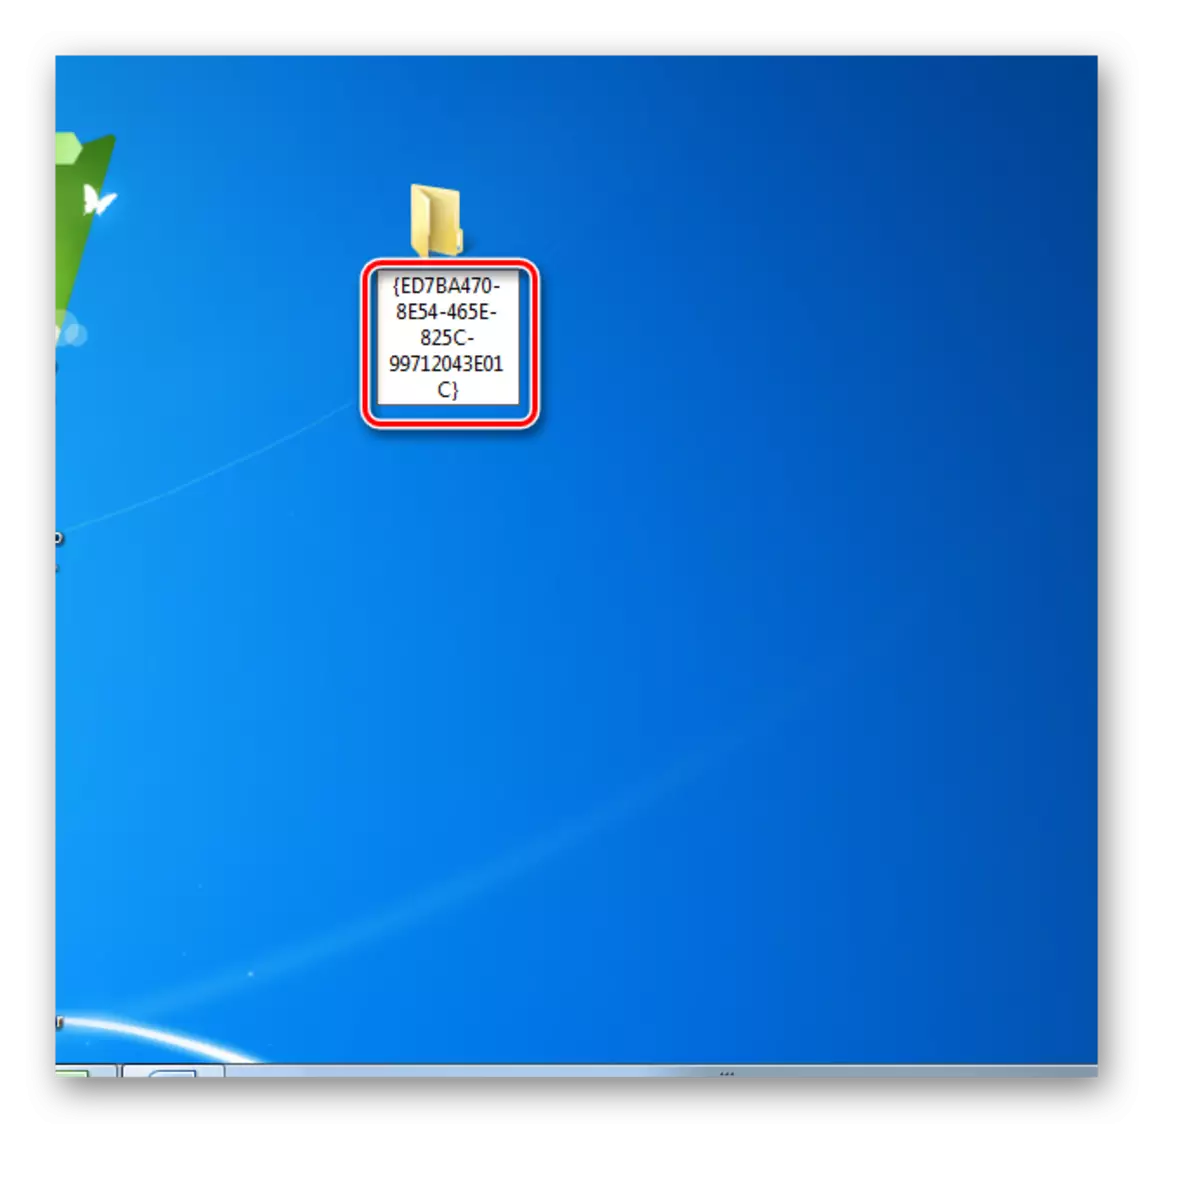 Renomeie a pasta na área de trabalho no Windows 7